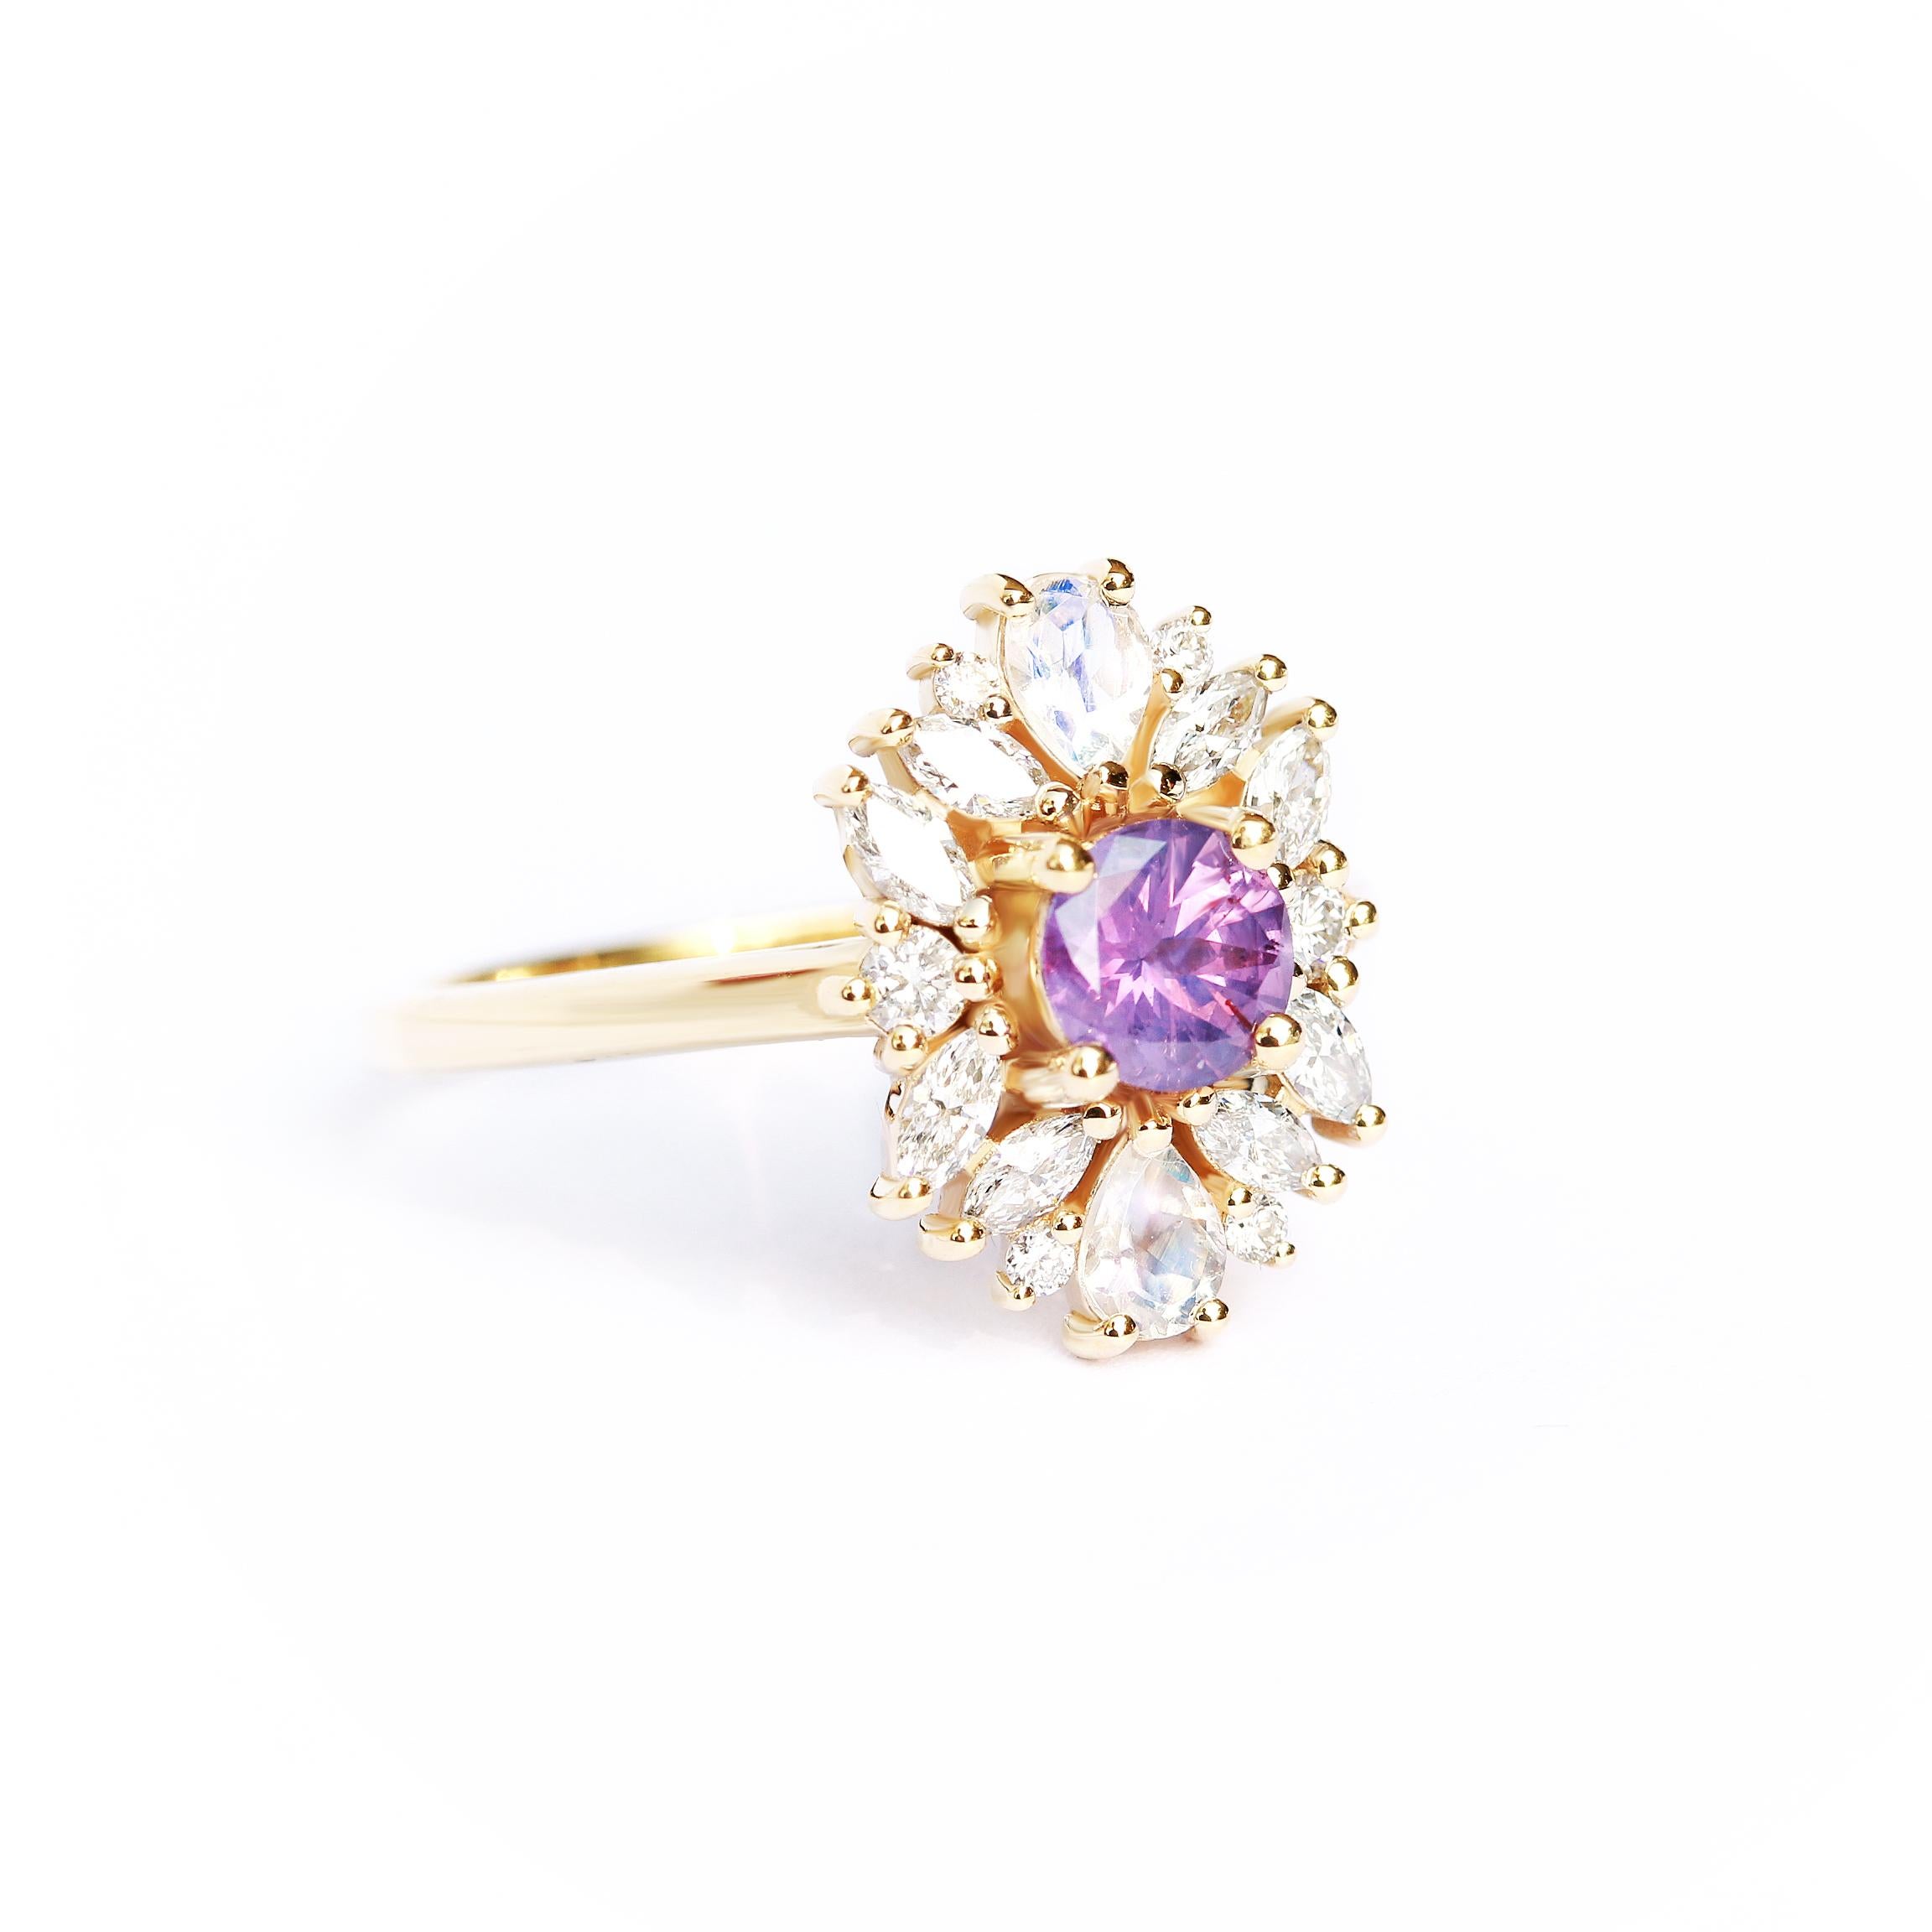 Art Deco Lavender sapphire Cluster Unique Engagement Ring, Alternative Bride 